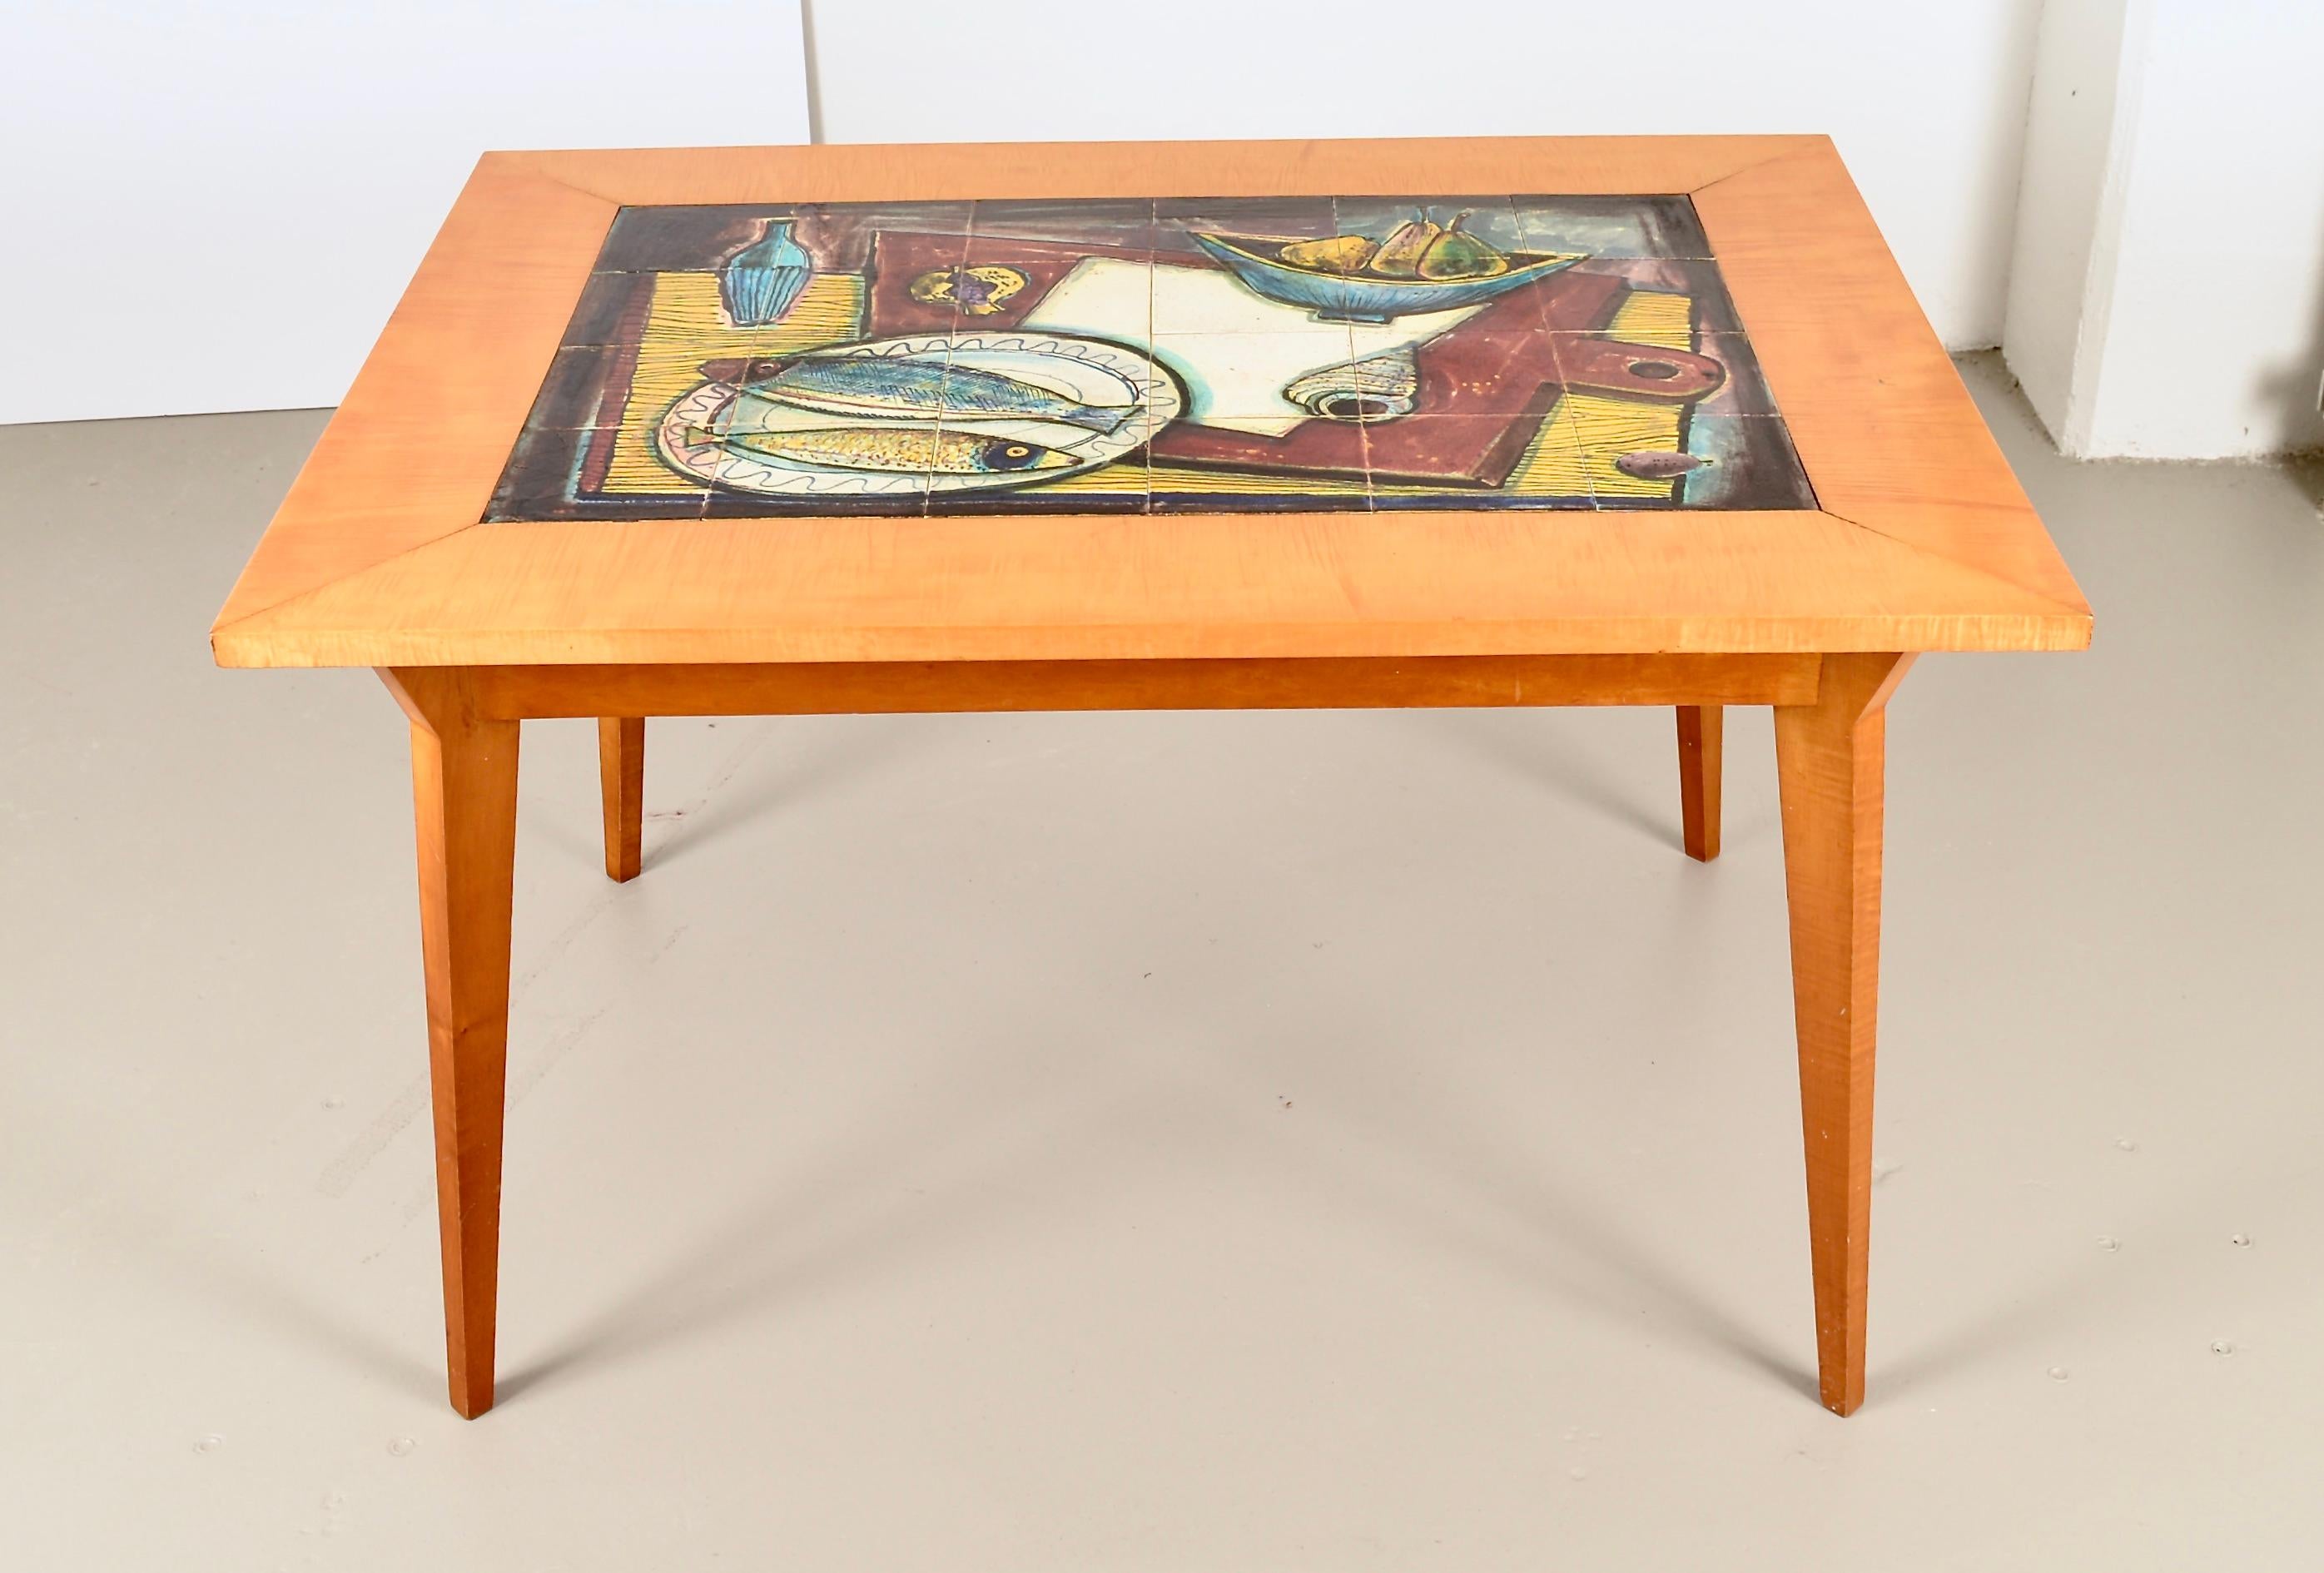 Schöner Tisch mit Kachelplatte, hergestellt in Frankreich, ca. 1950er Jahre. Der Sockel ist aus Tigerahorn gefertigt und weich satiniert. Die farbenfrohen Fliesen wurden wahrscheinlich in Biot, Frankreich, hergestellt und zeigen ein Stillleben mit